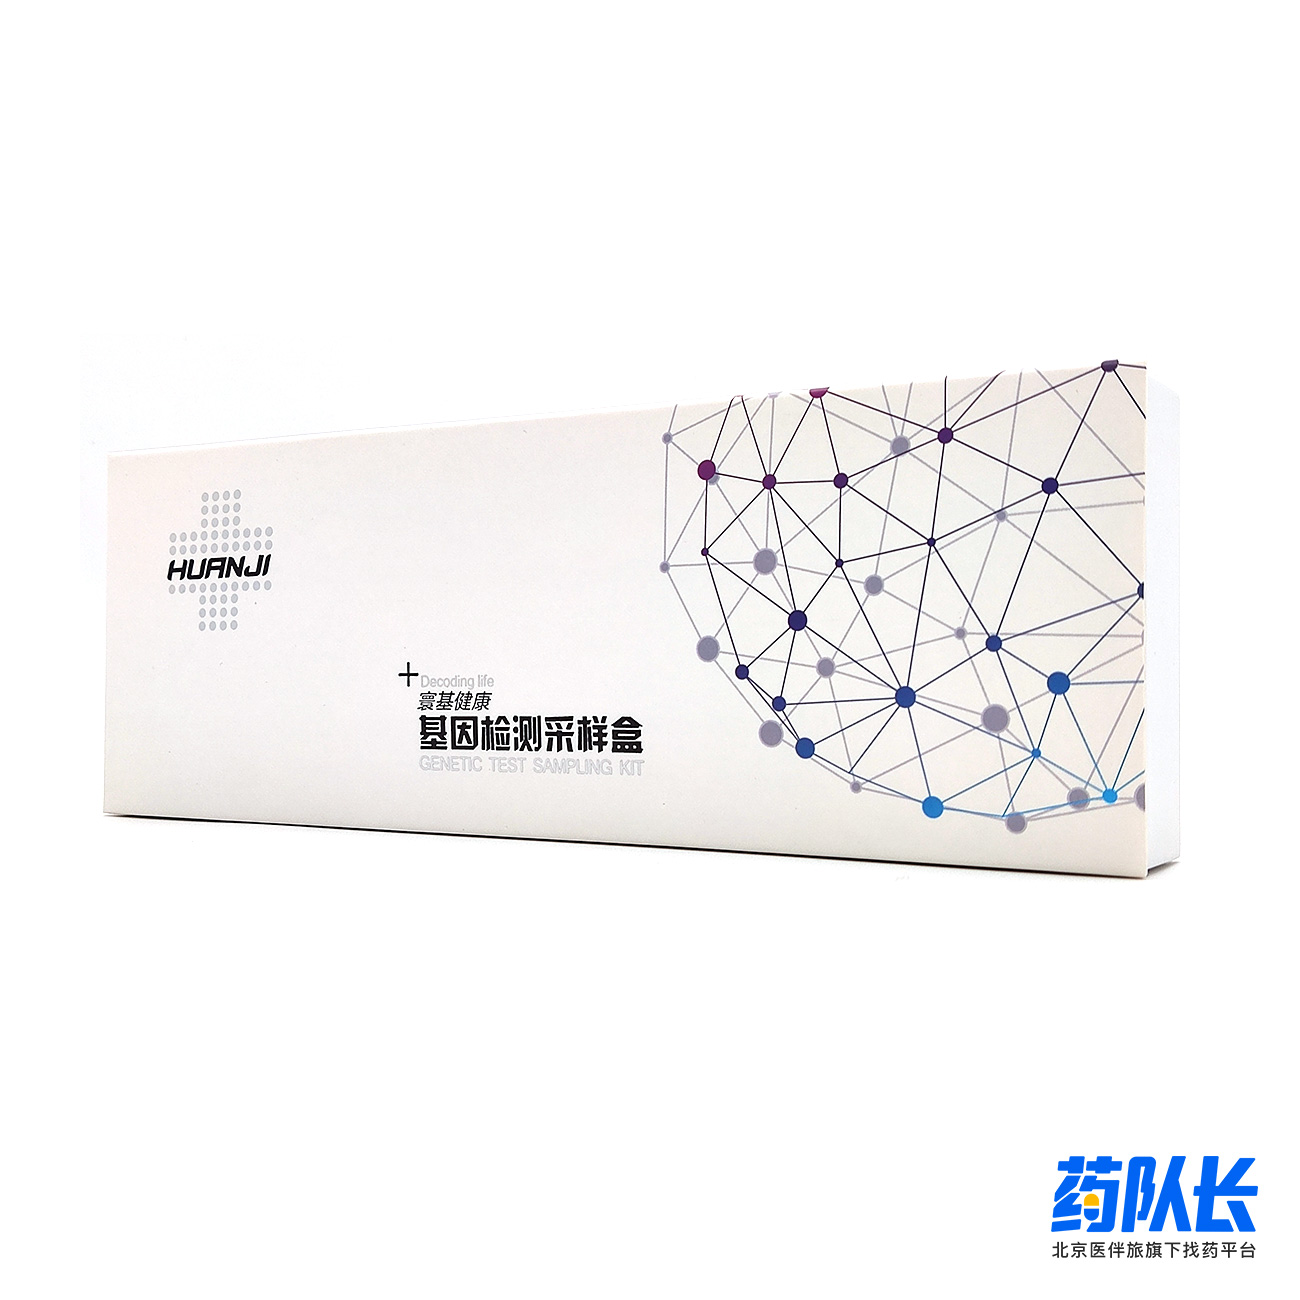 中国寰基的HPV自测盒